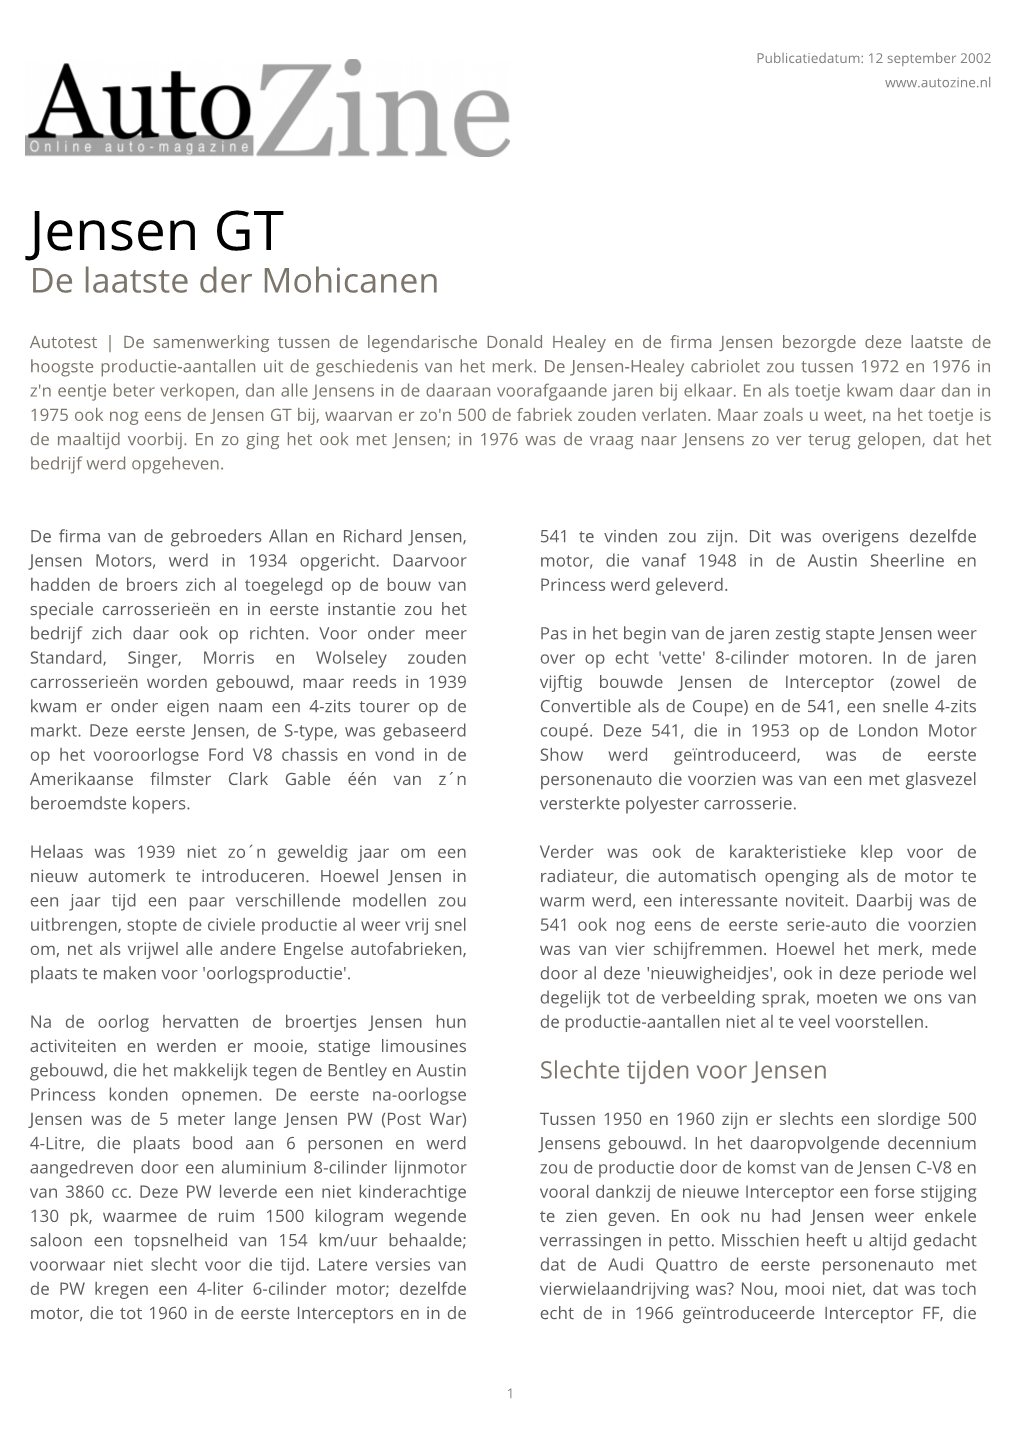 Jensen GT De Laatste Der Mohicanen